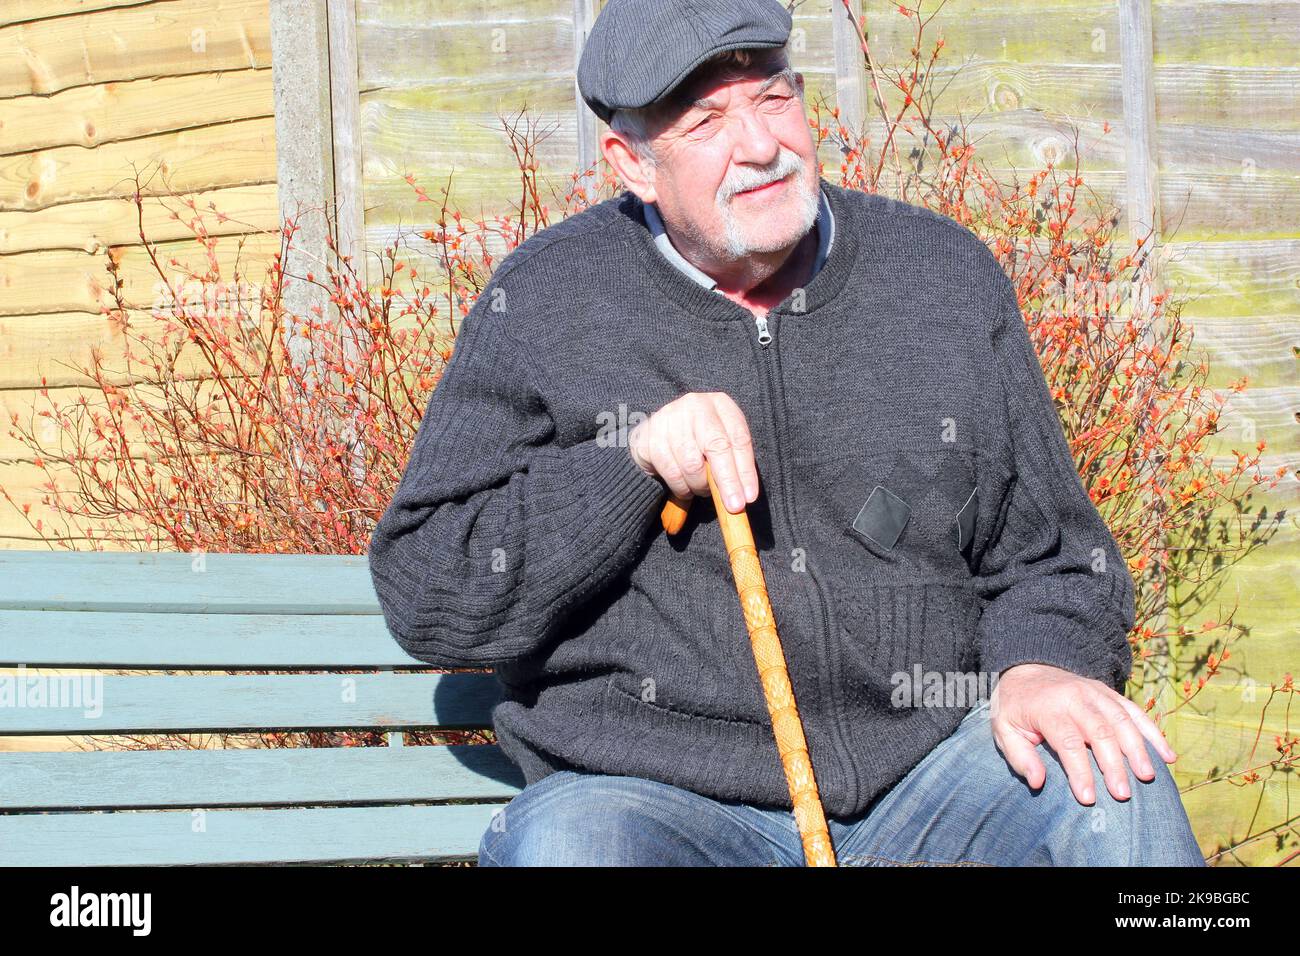 Alter oder älterer Mann, der auf einer Bank sitzt und sich entspannt. Mann, der eine Stoffkappe trägt und einen Spazierstock hält. Stockfoto